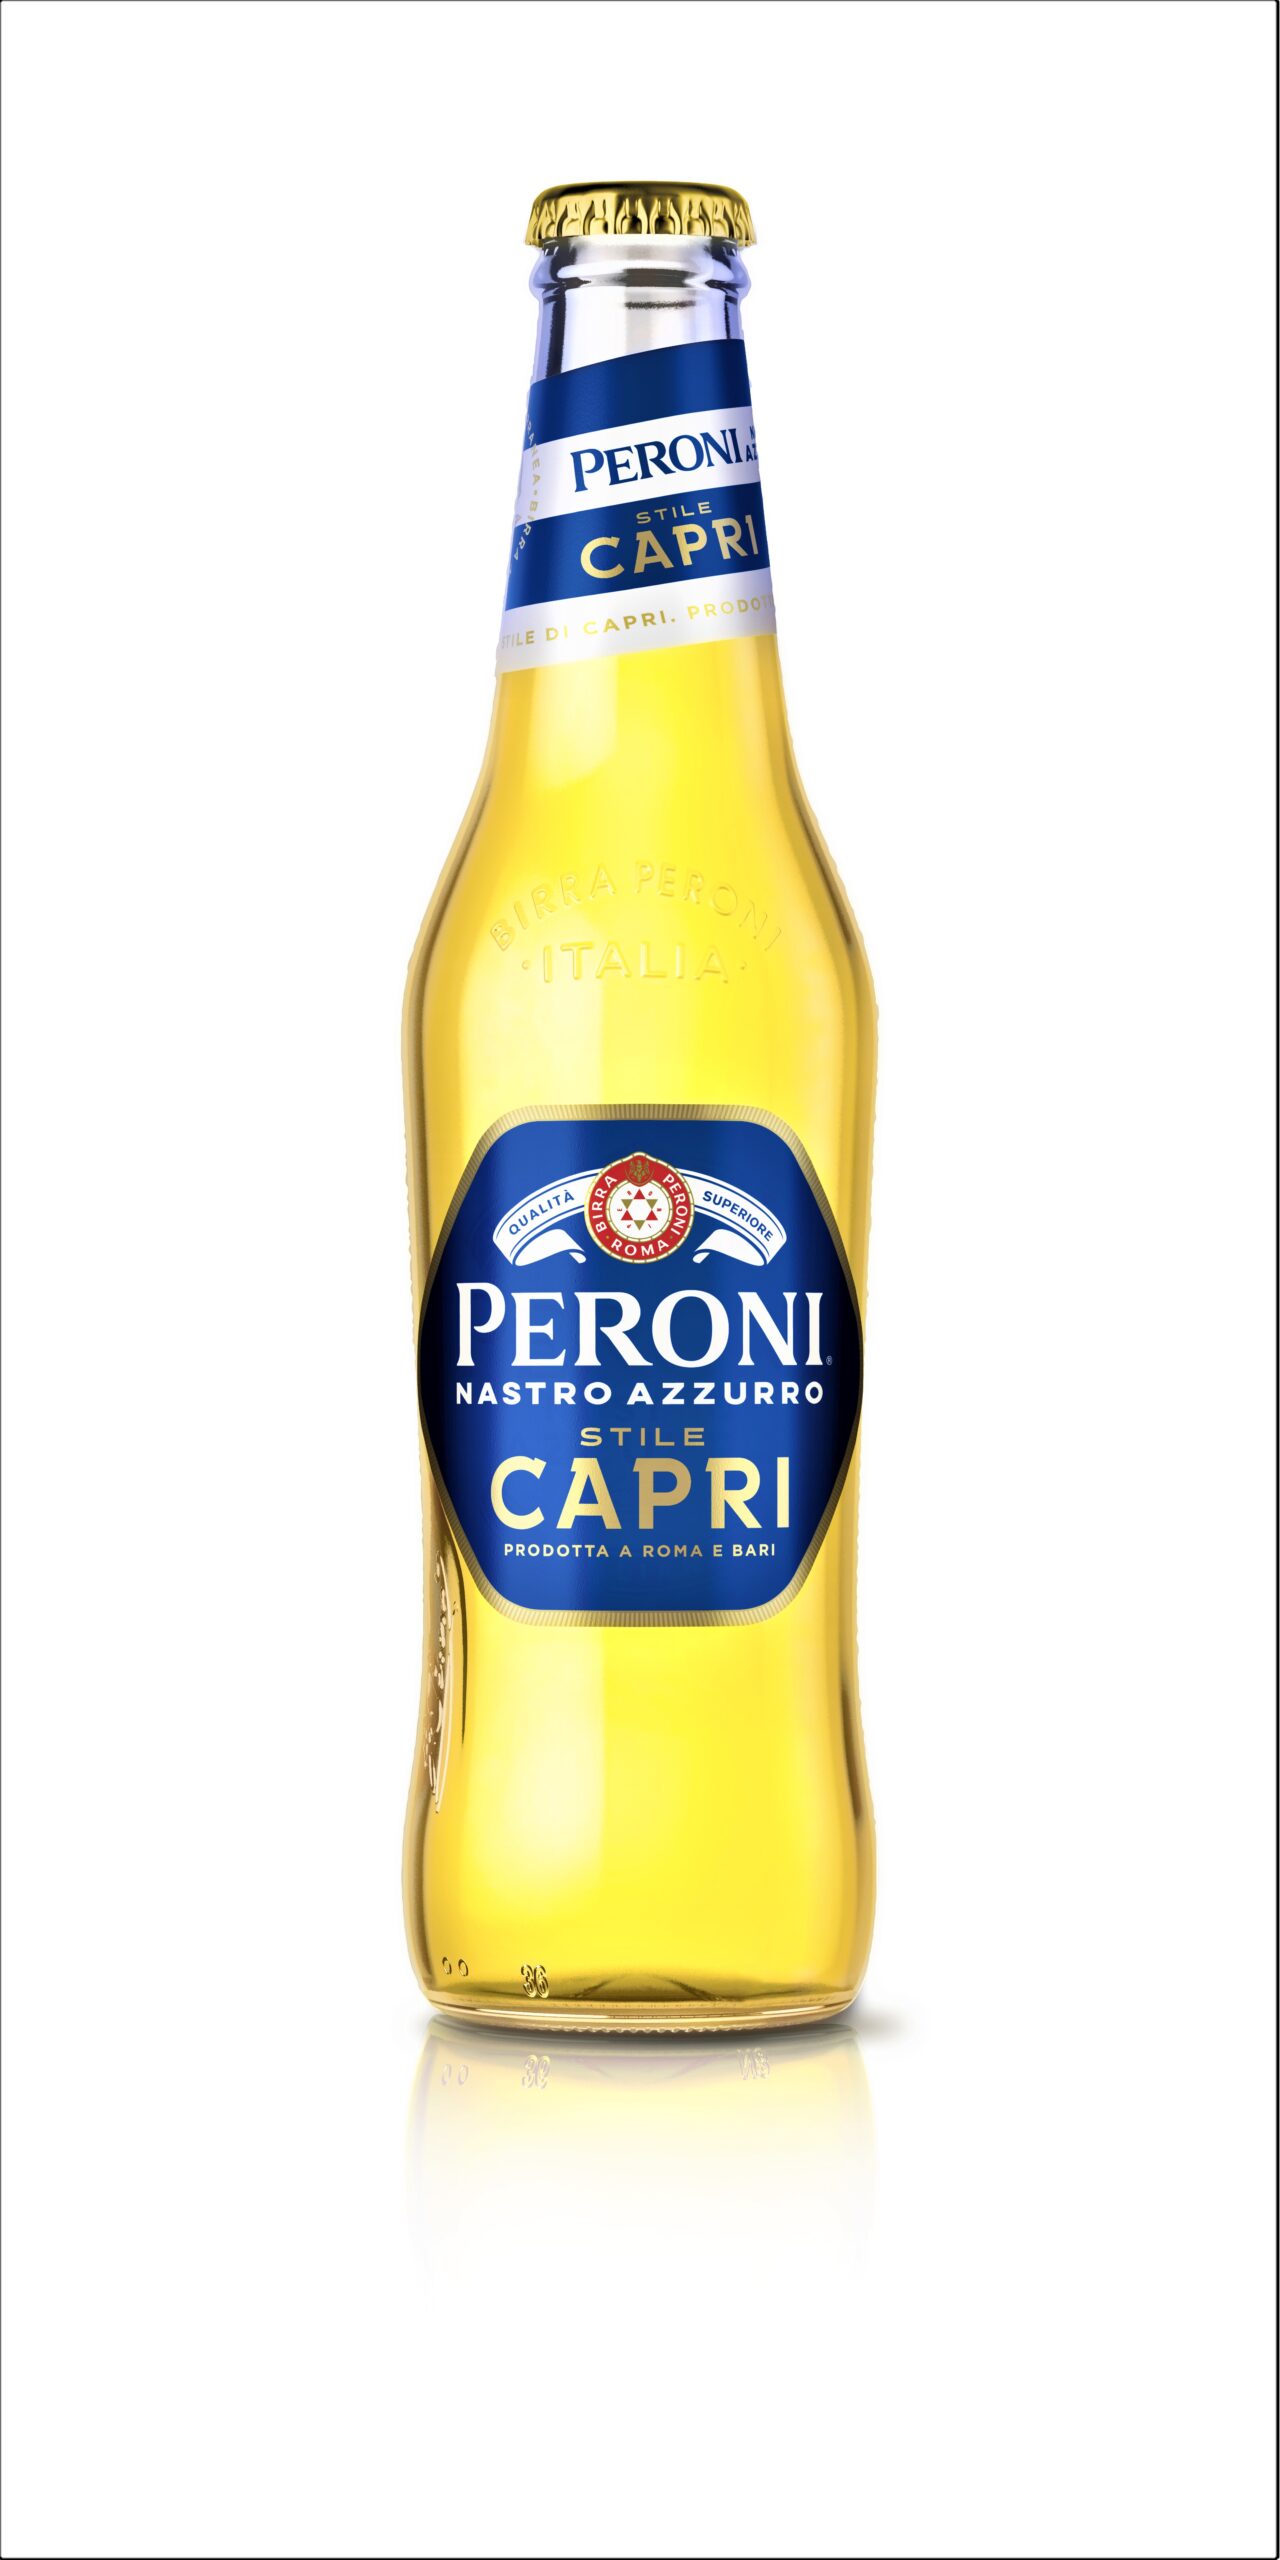 Stile Capri Peroni Nastro Azzurro